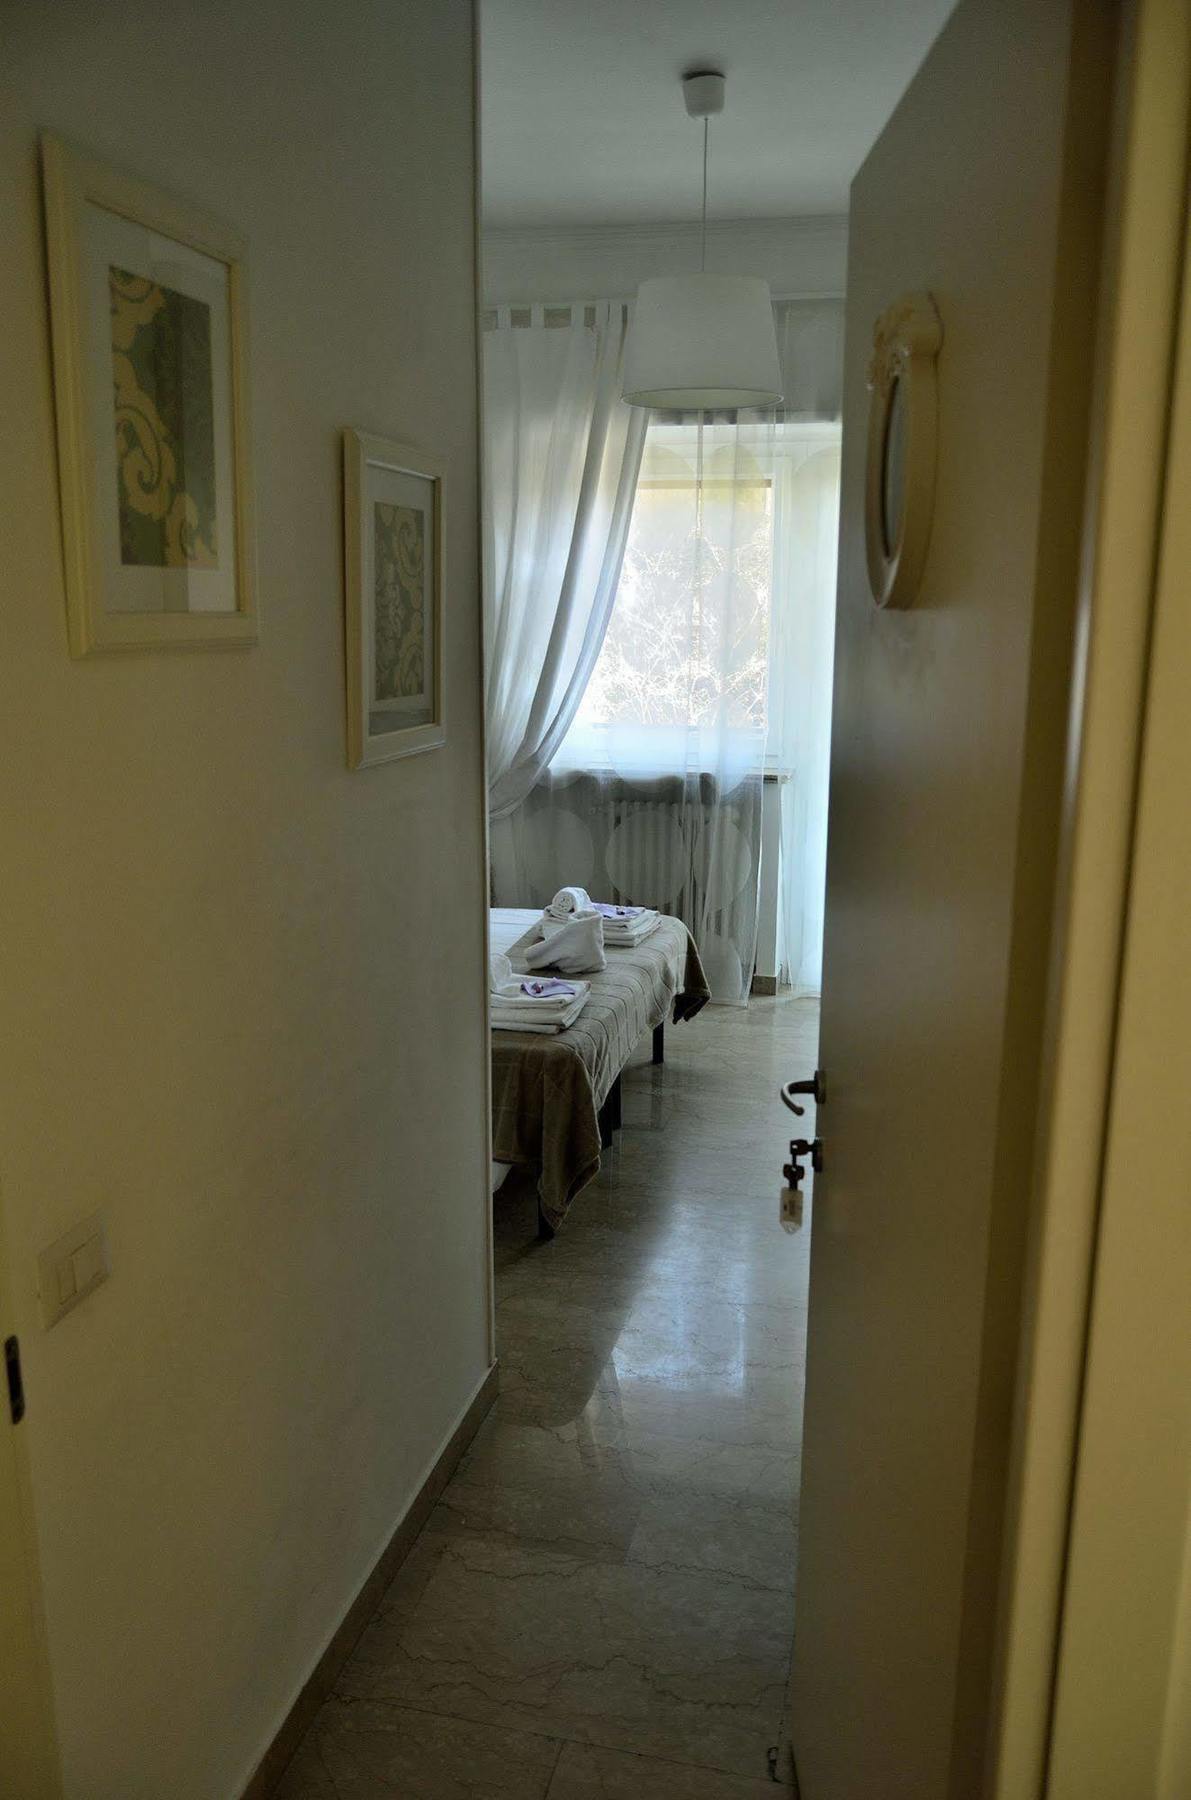 Rome&Suites Exterior photo